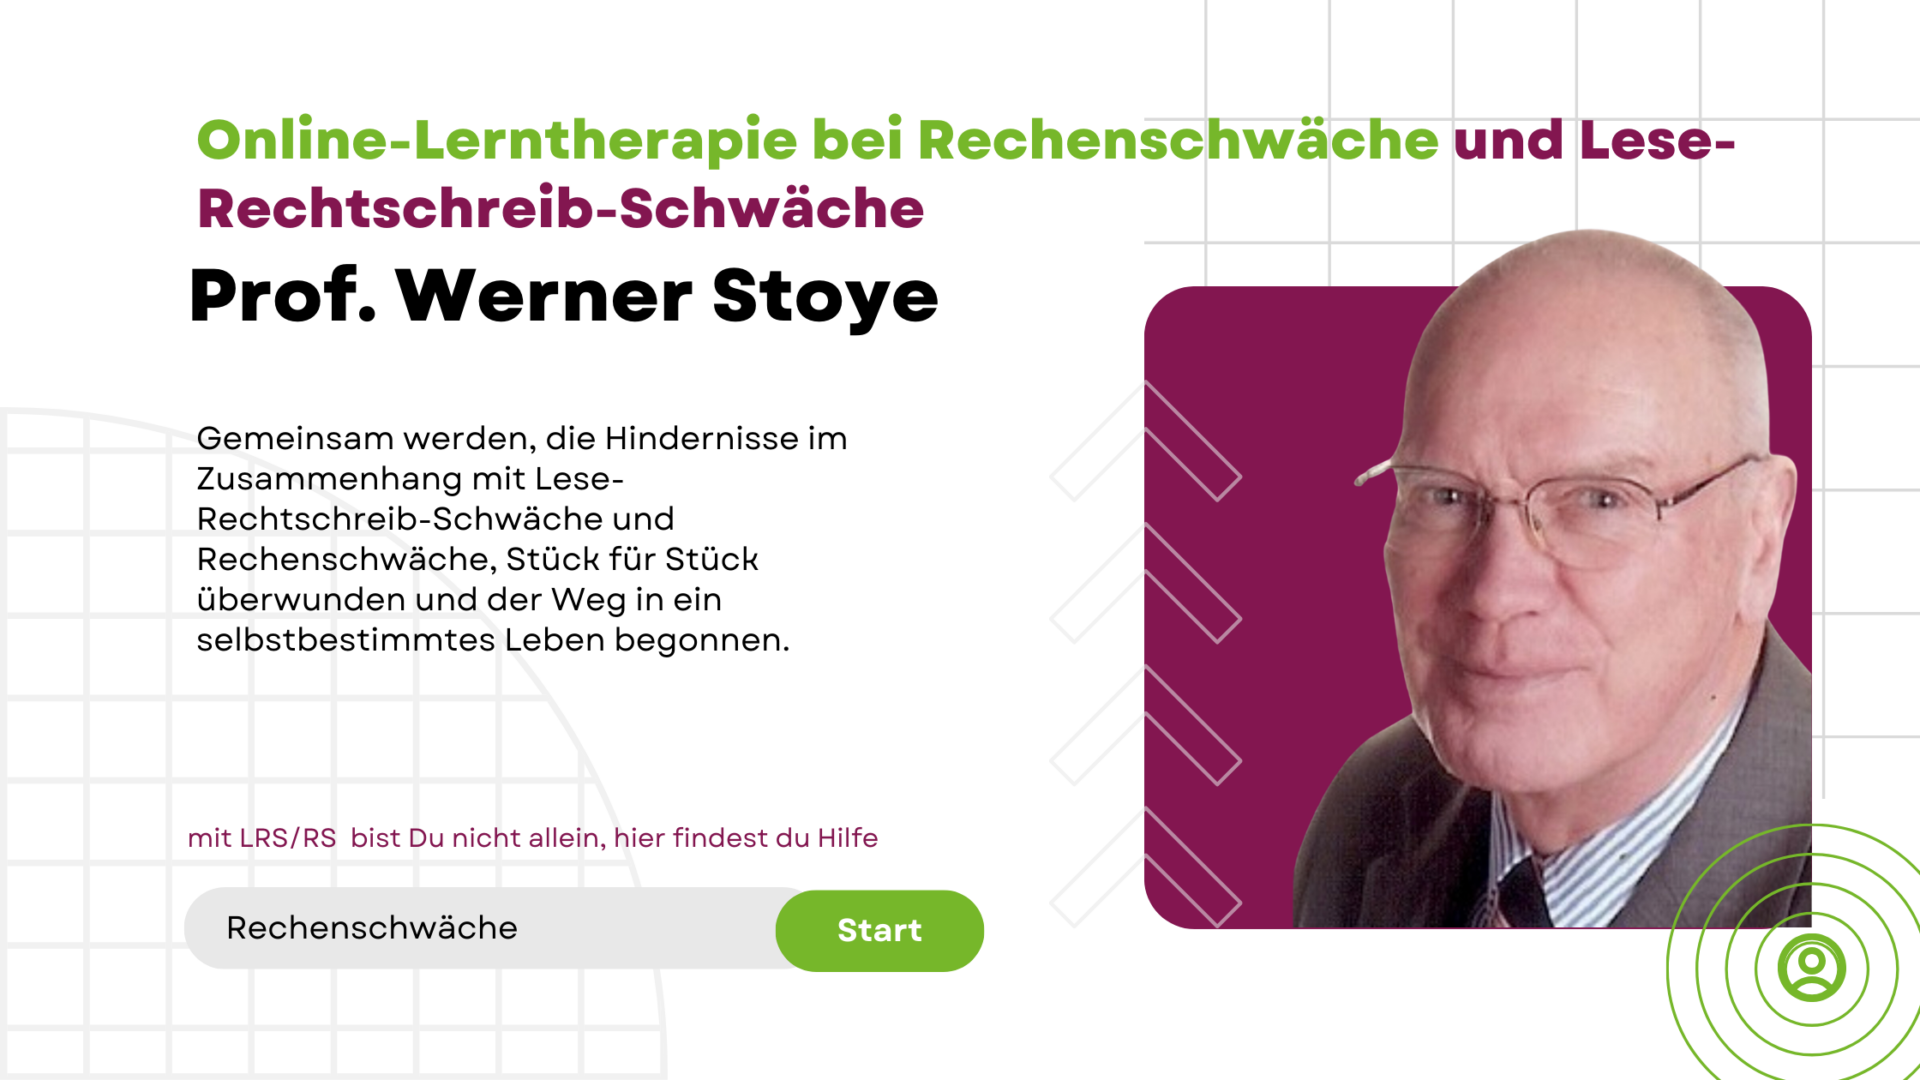 Prof. Werner Stoye